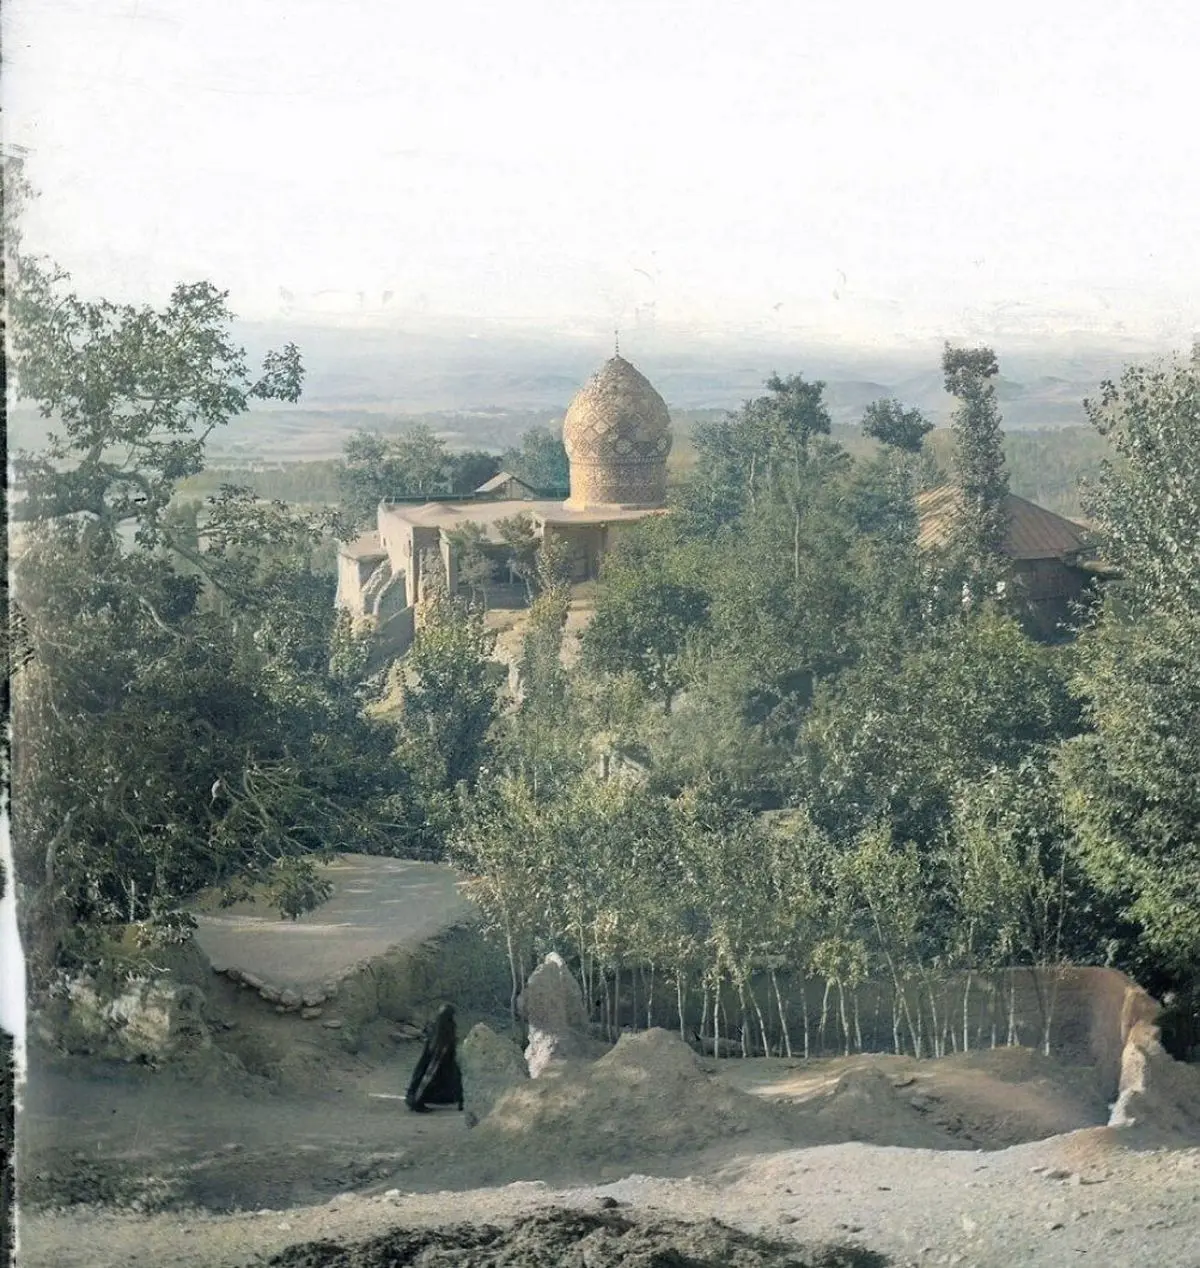 قدیمی ترین عکس از منطقۀ شمیران در شمال تهران از ۱۰۰ سال پیش!